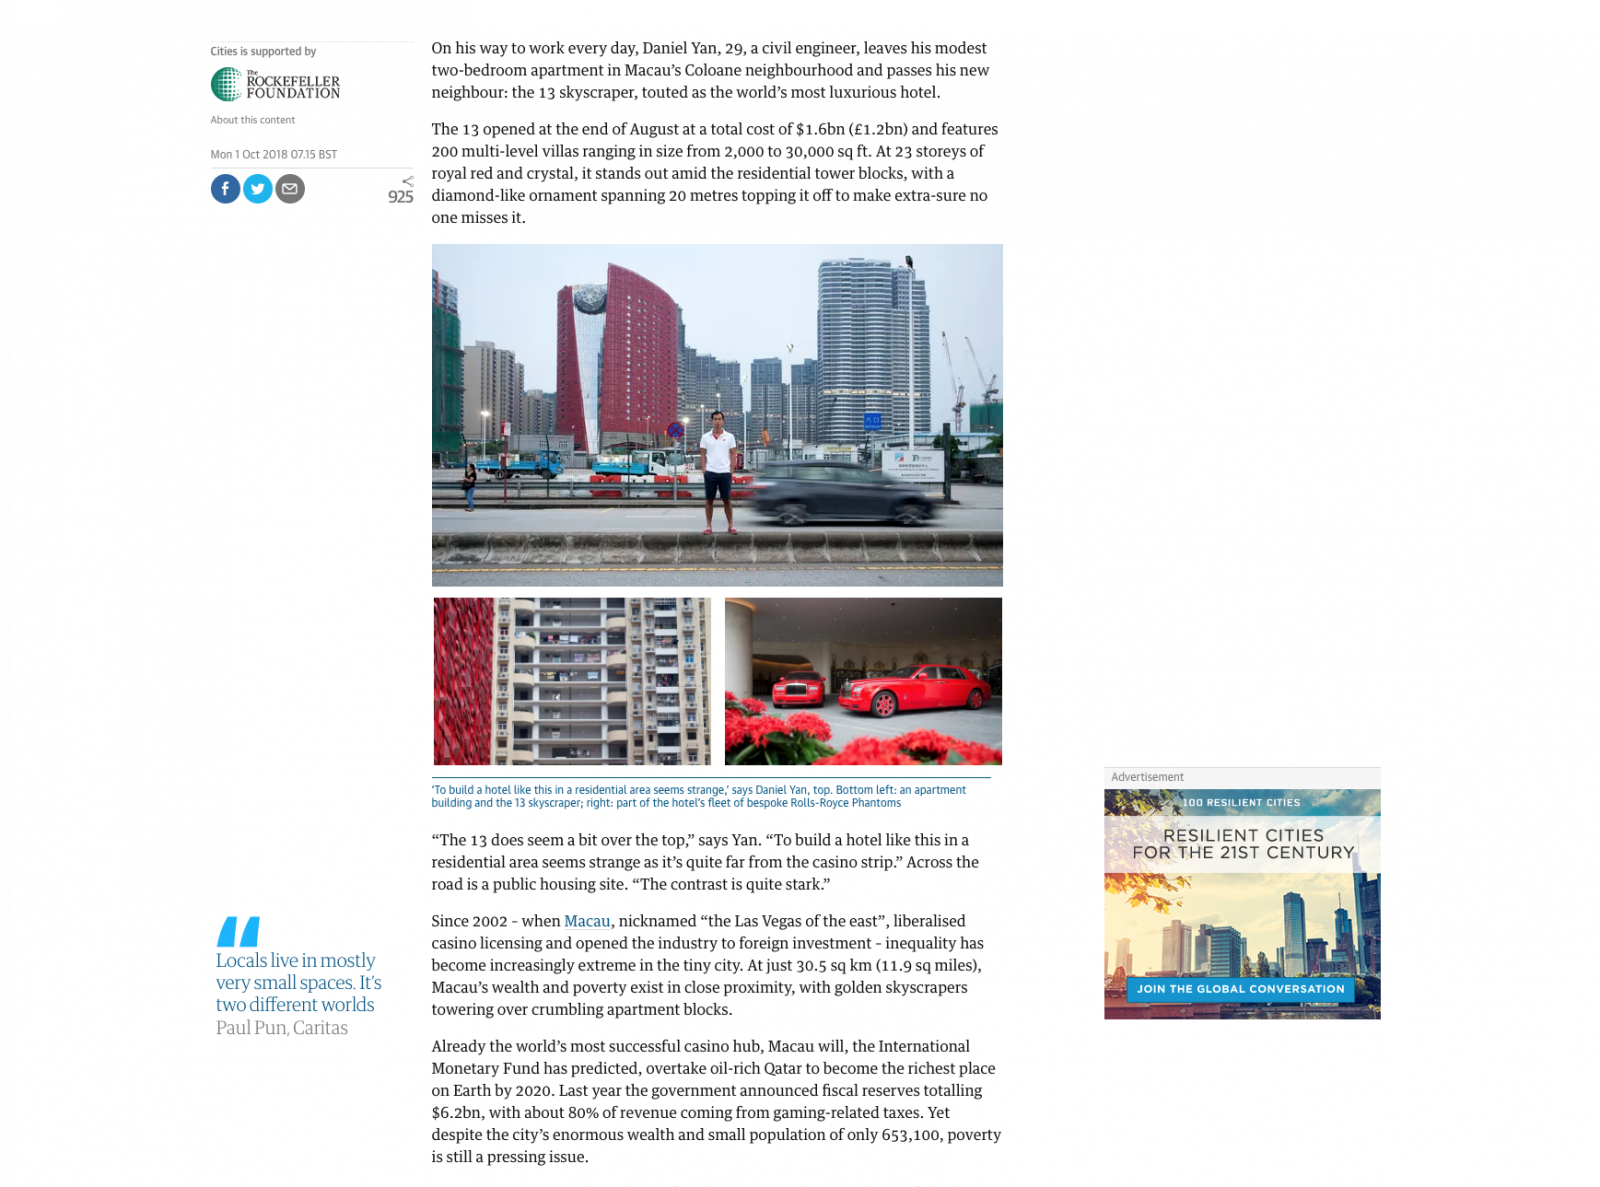 Multibillion-dollar Macau: a city of glitz and grit  - 